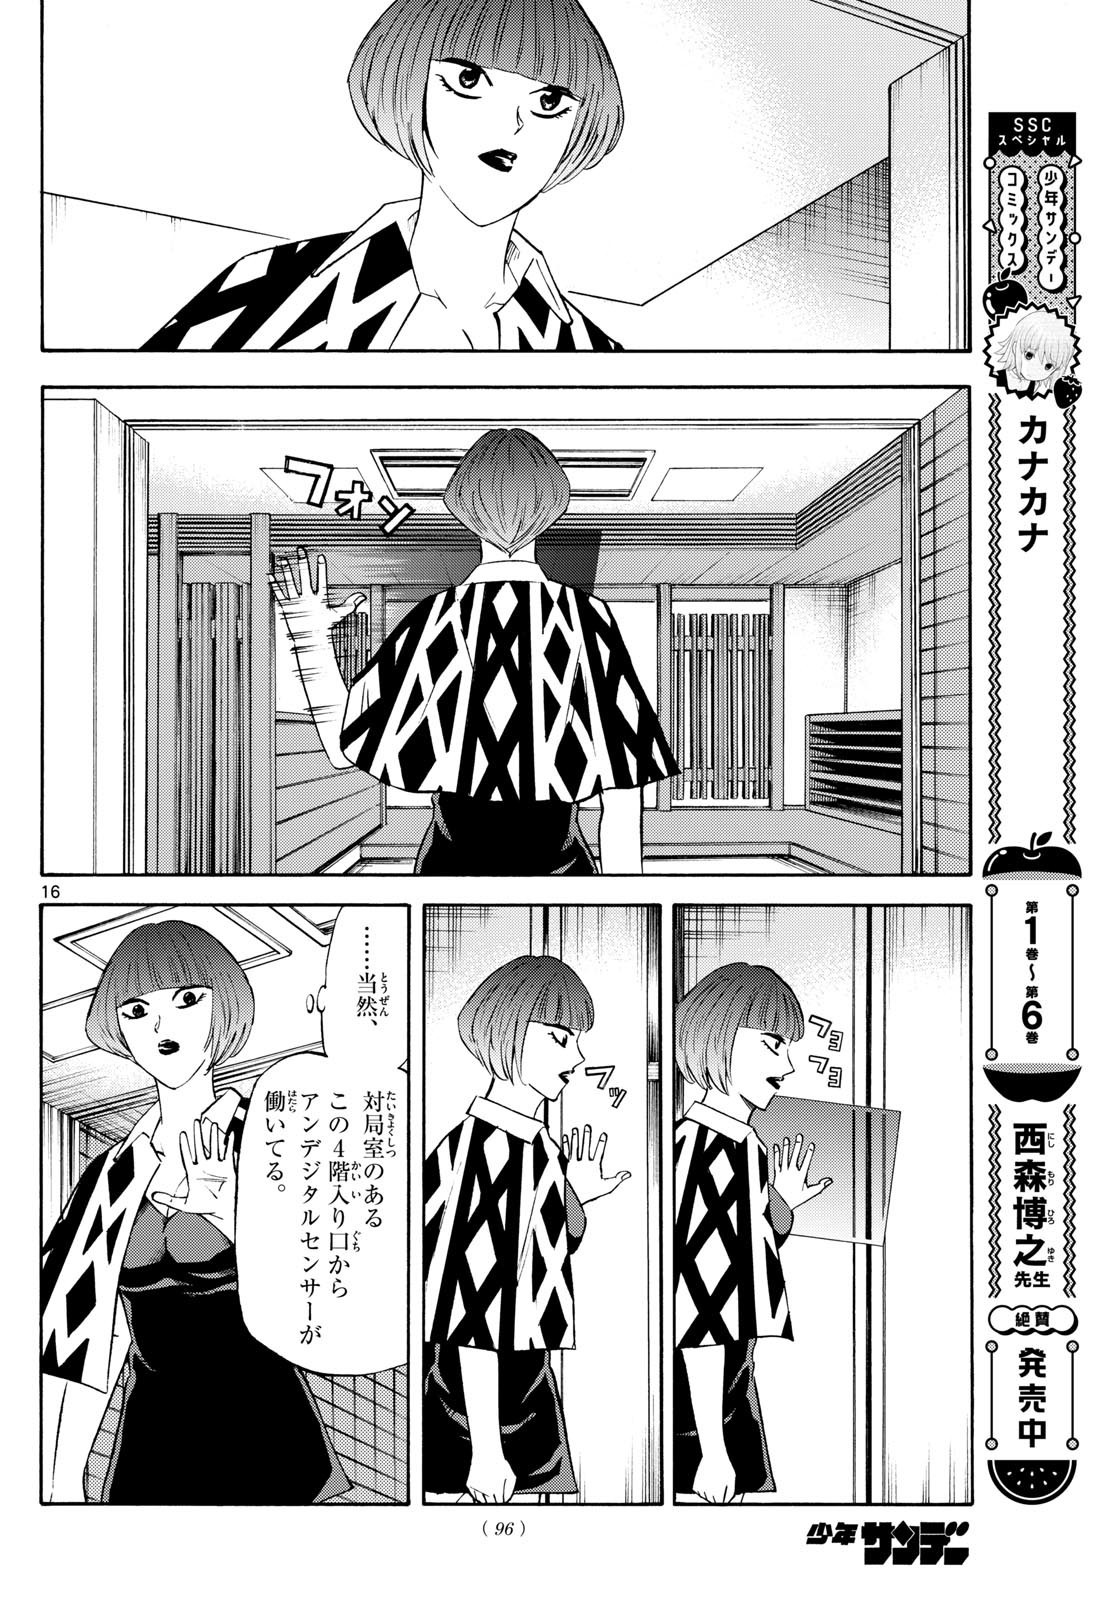 Tatsu to Ichigo - Chapter 199 - Page 16